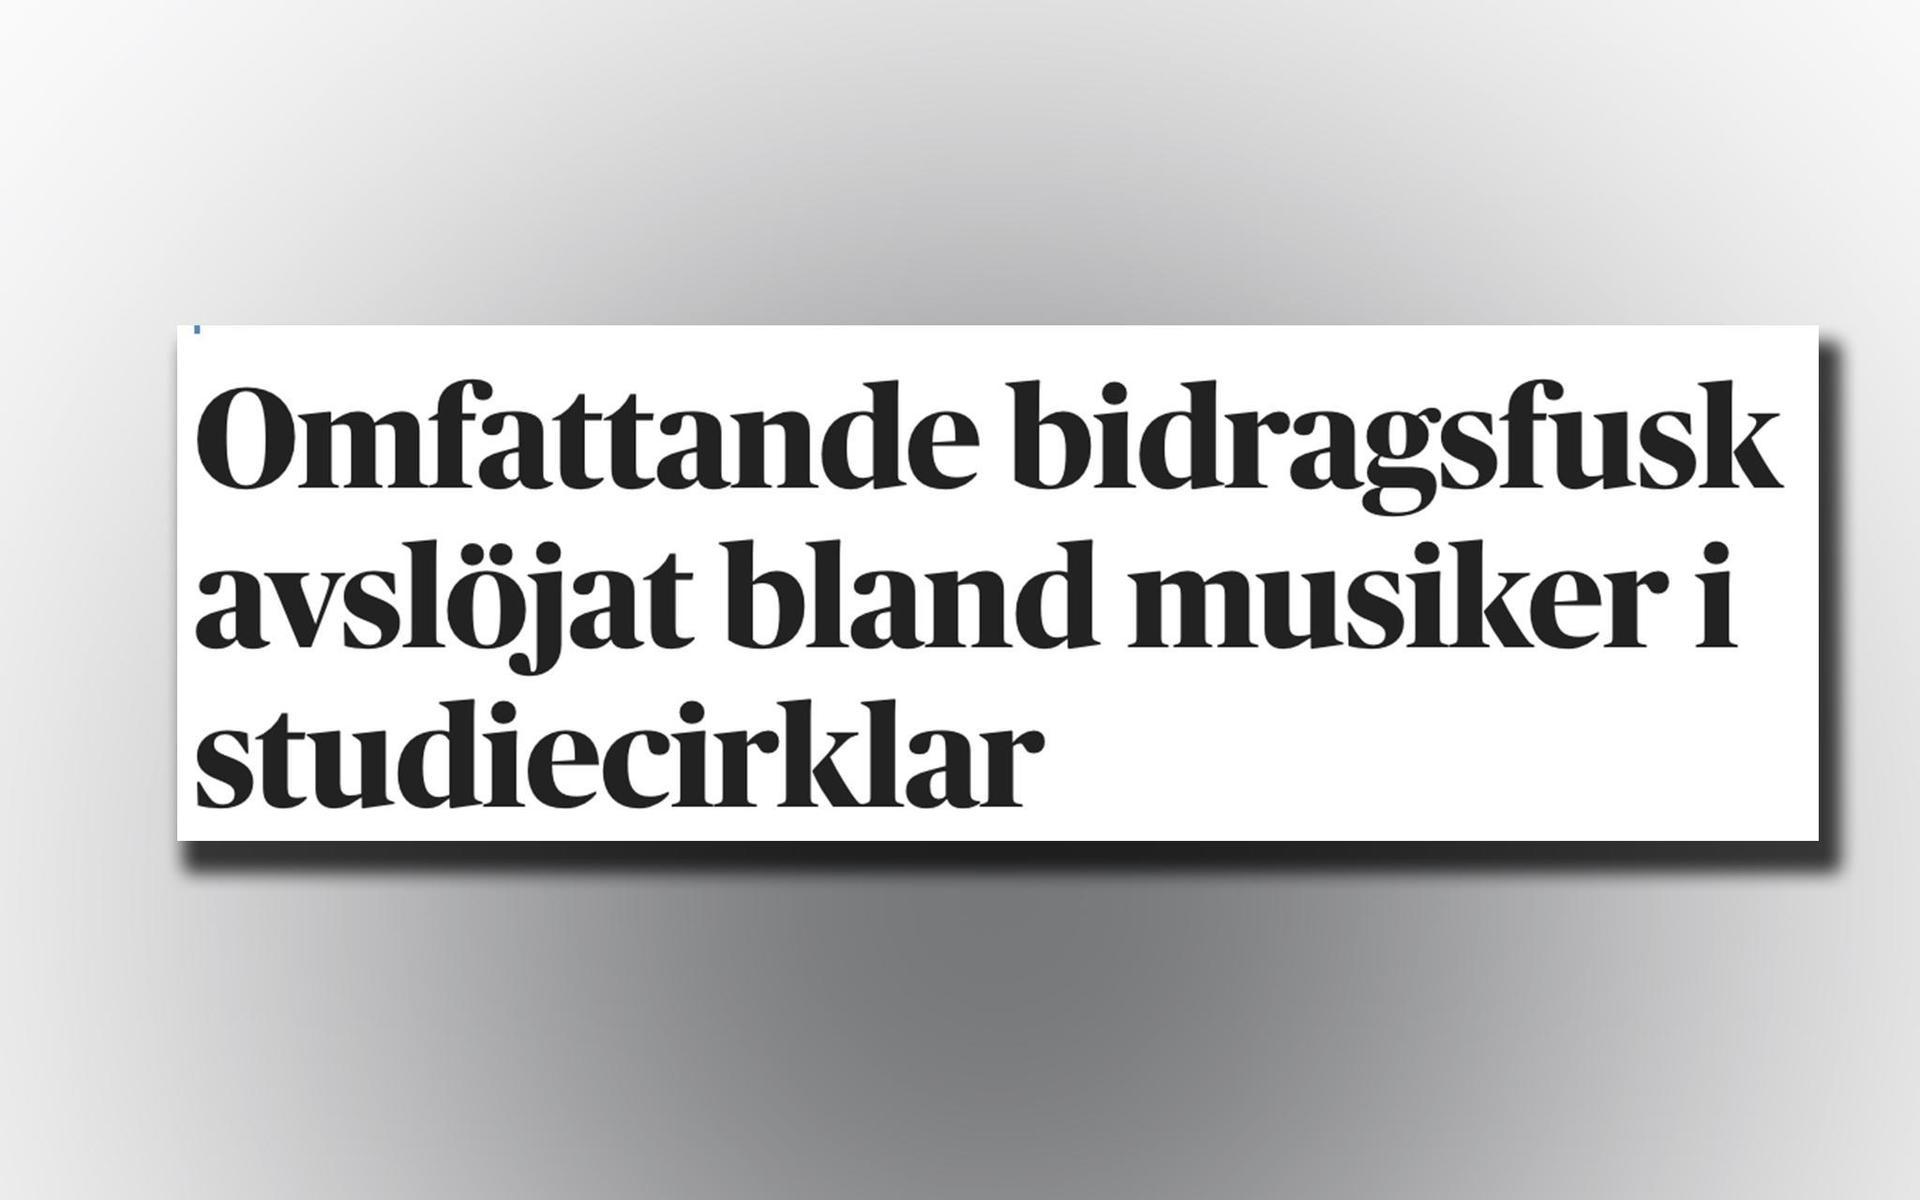 Dagens Nyheter hade tidigare berättat om härvan. En av kategorierna där flera felaktigheter upptäckts, även i Halland, är bland musiker. 